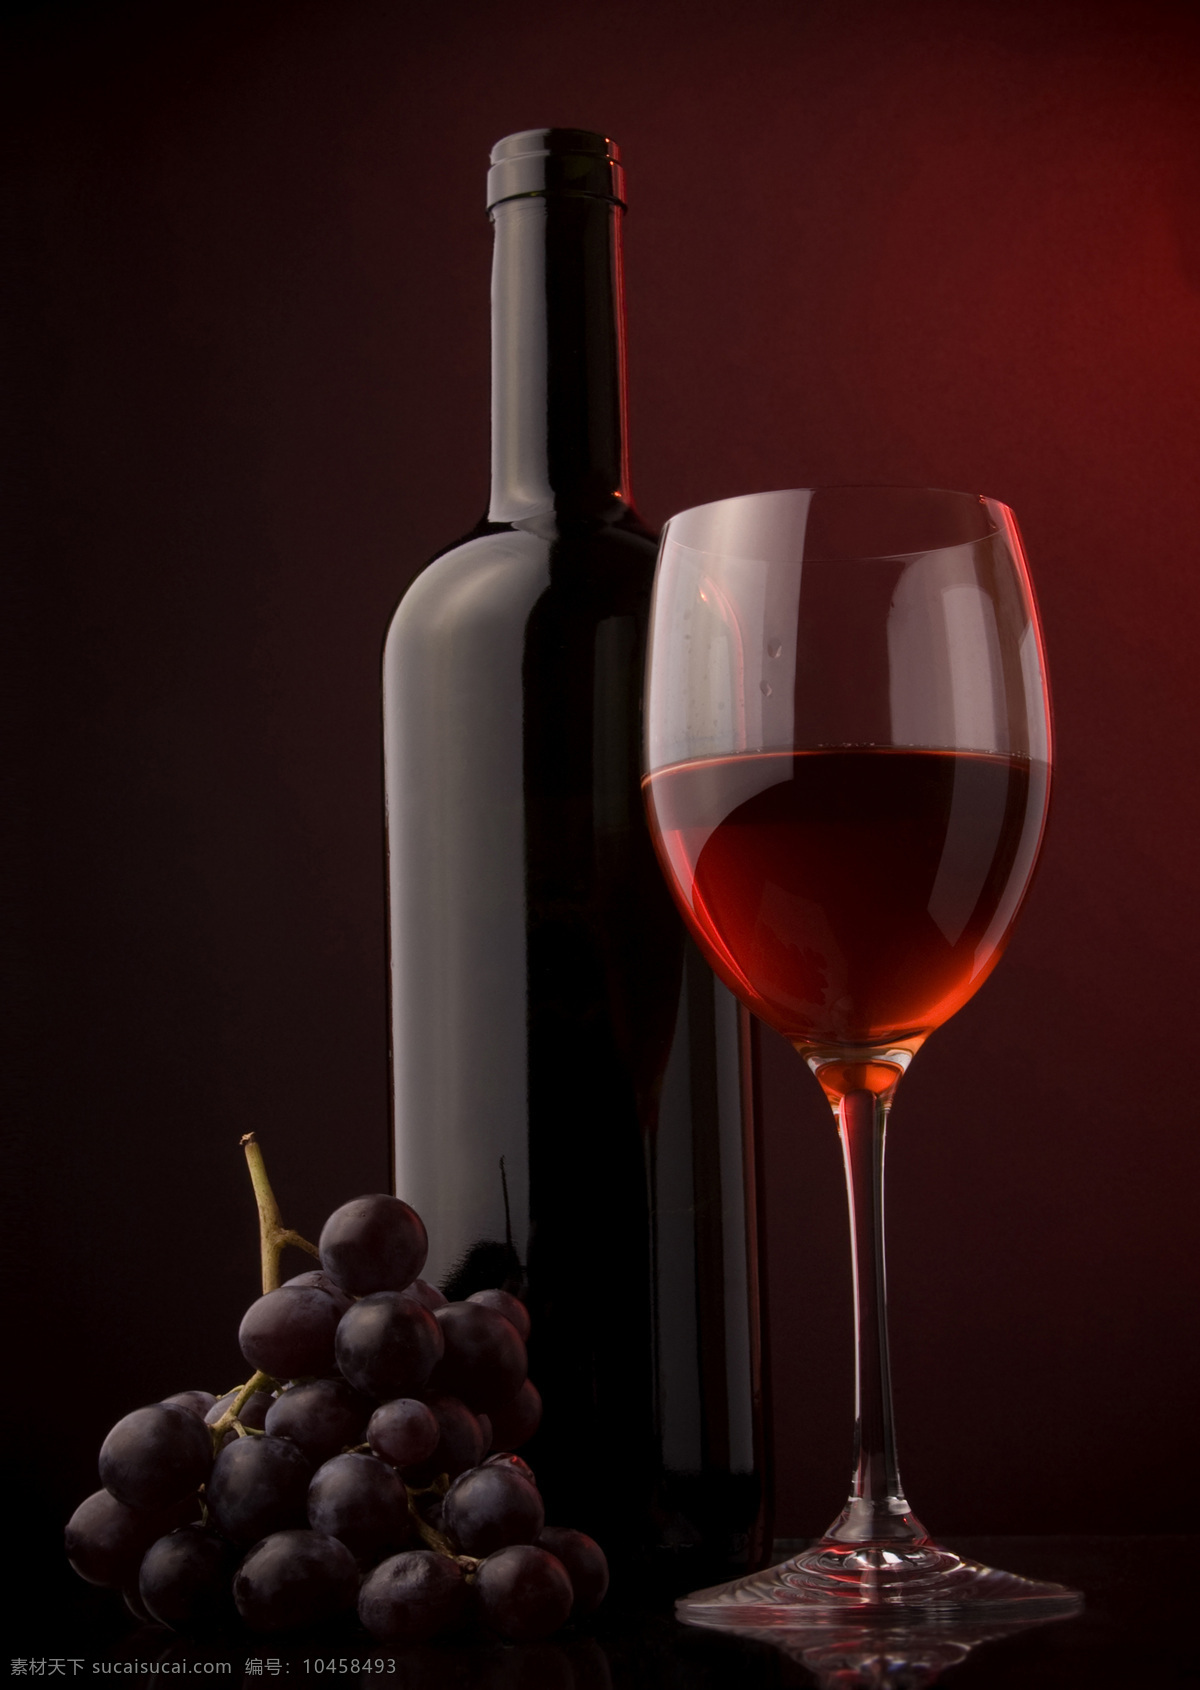 葡萄酒酒杯 酒杯 瓶子 红酒 葡萄酒 酒瓶 装饰画 饮料 餐饮美食 饮料酒水